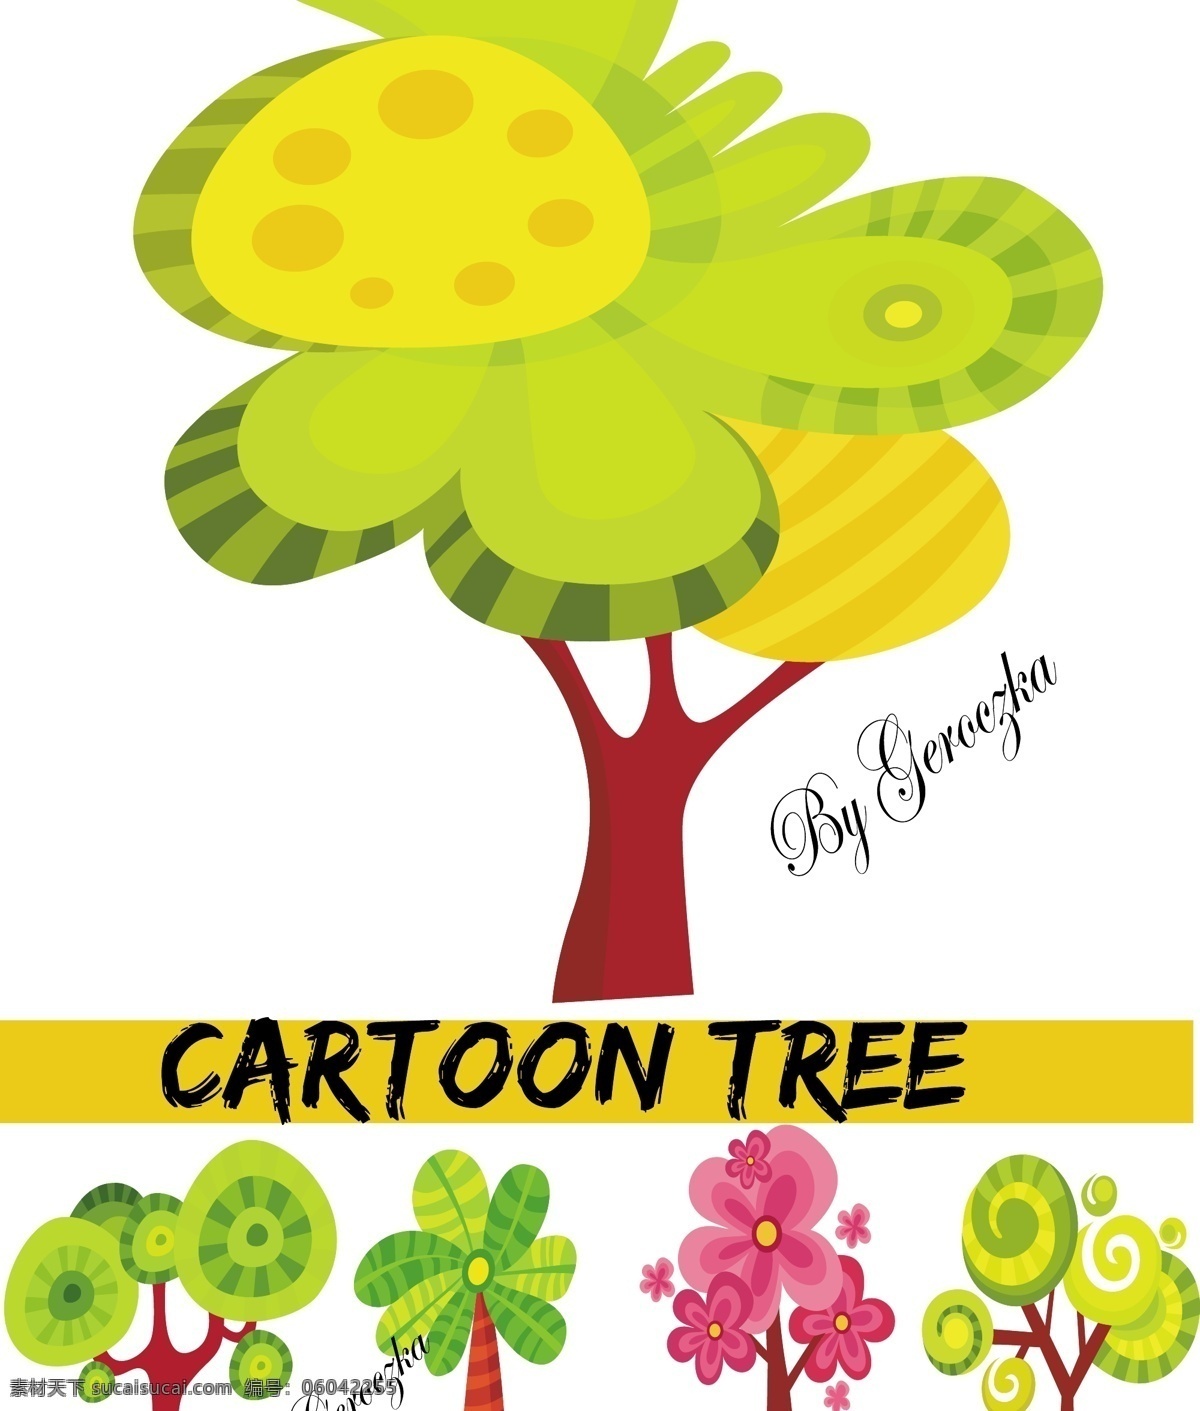 超级 可爱 卡通 树木 矢量图 卡通树木 其他矢量图